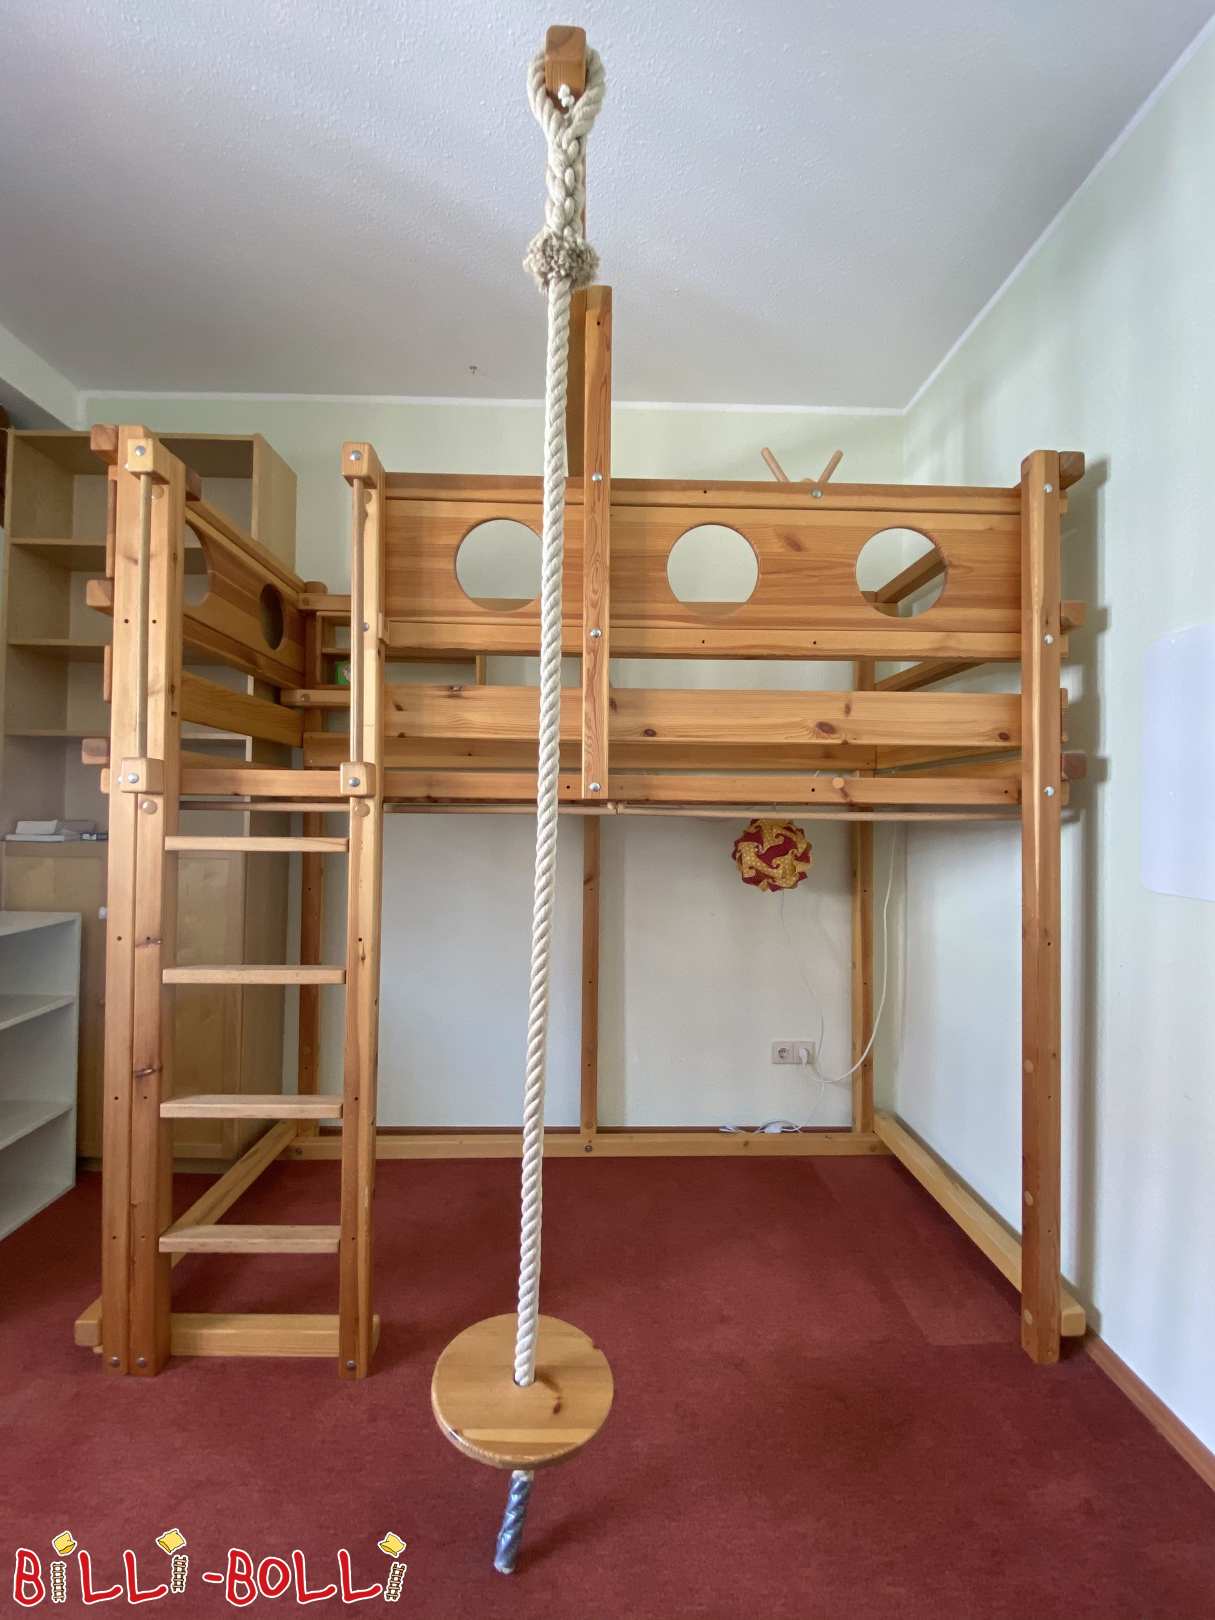 Billi Bolli loft cama feita de pinheiro que cresce com a criança (Categoria: Cama alta usada)